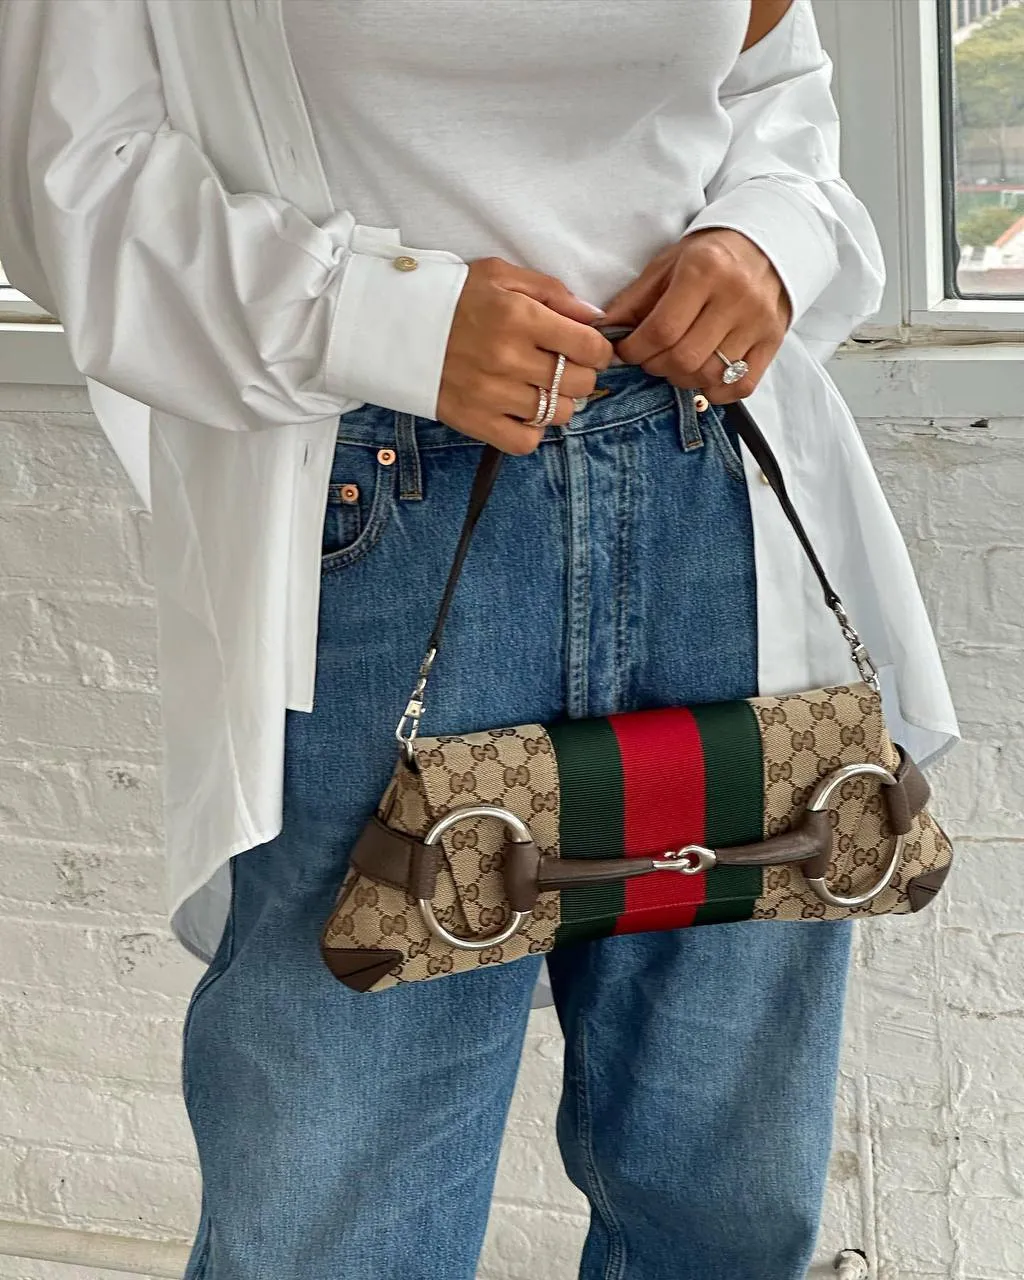 Популярная сумка осени Gucci Horsebit Chain